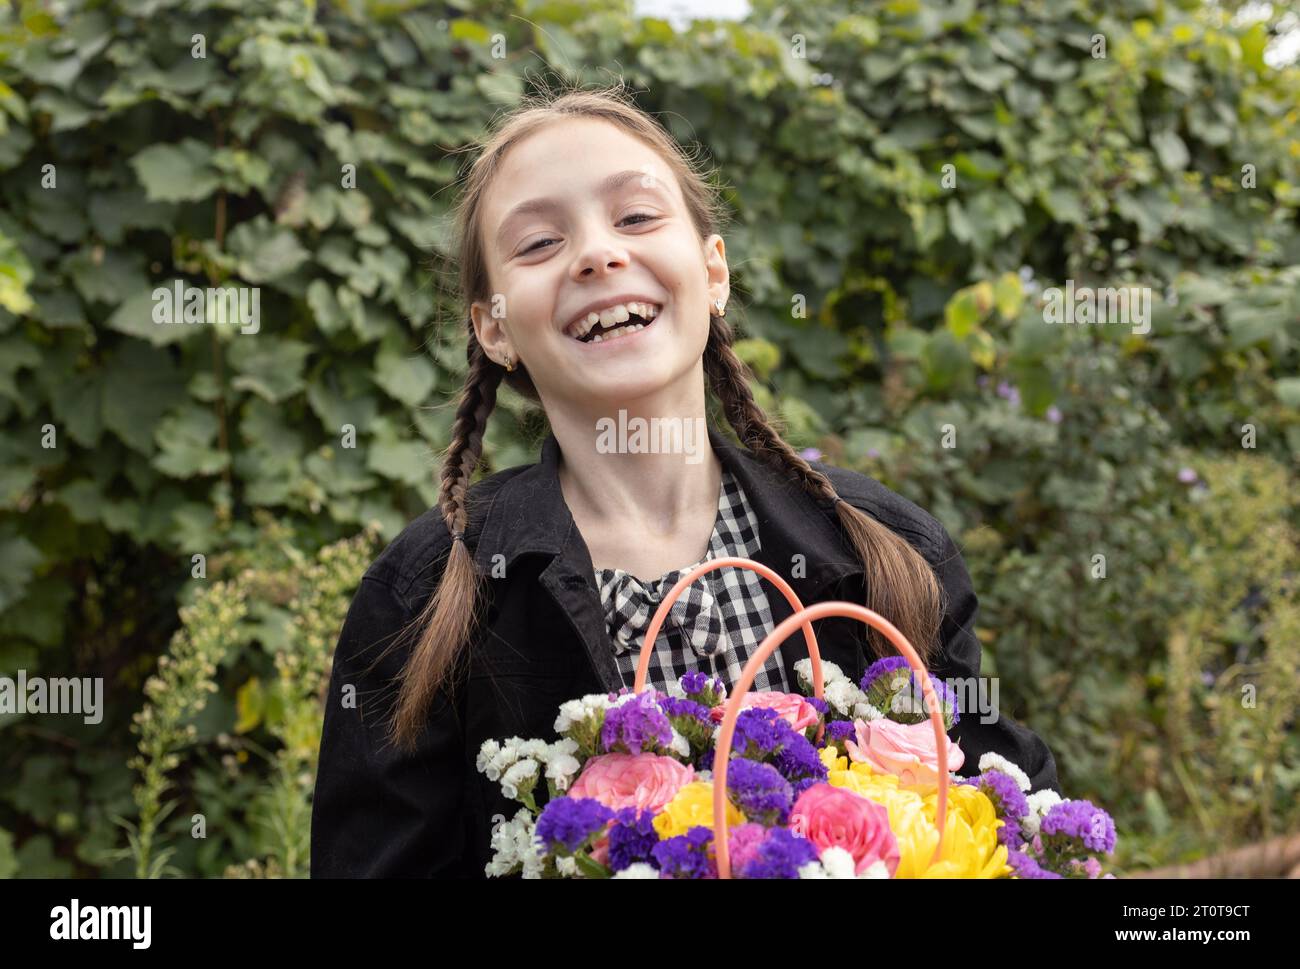 Porträt eines fröhlich lachenden Mädchens 7-8 Jahre alt mit einem Blumenstrauß in der Hand. Glückliche Kindheit, fröhliche emotionale Kinder, positives Kind. Stockfoto